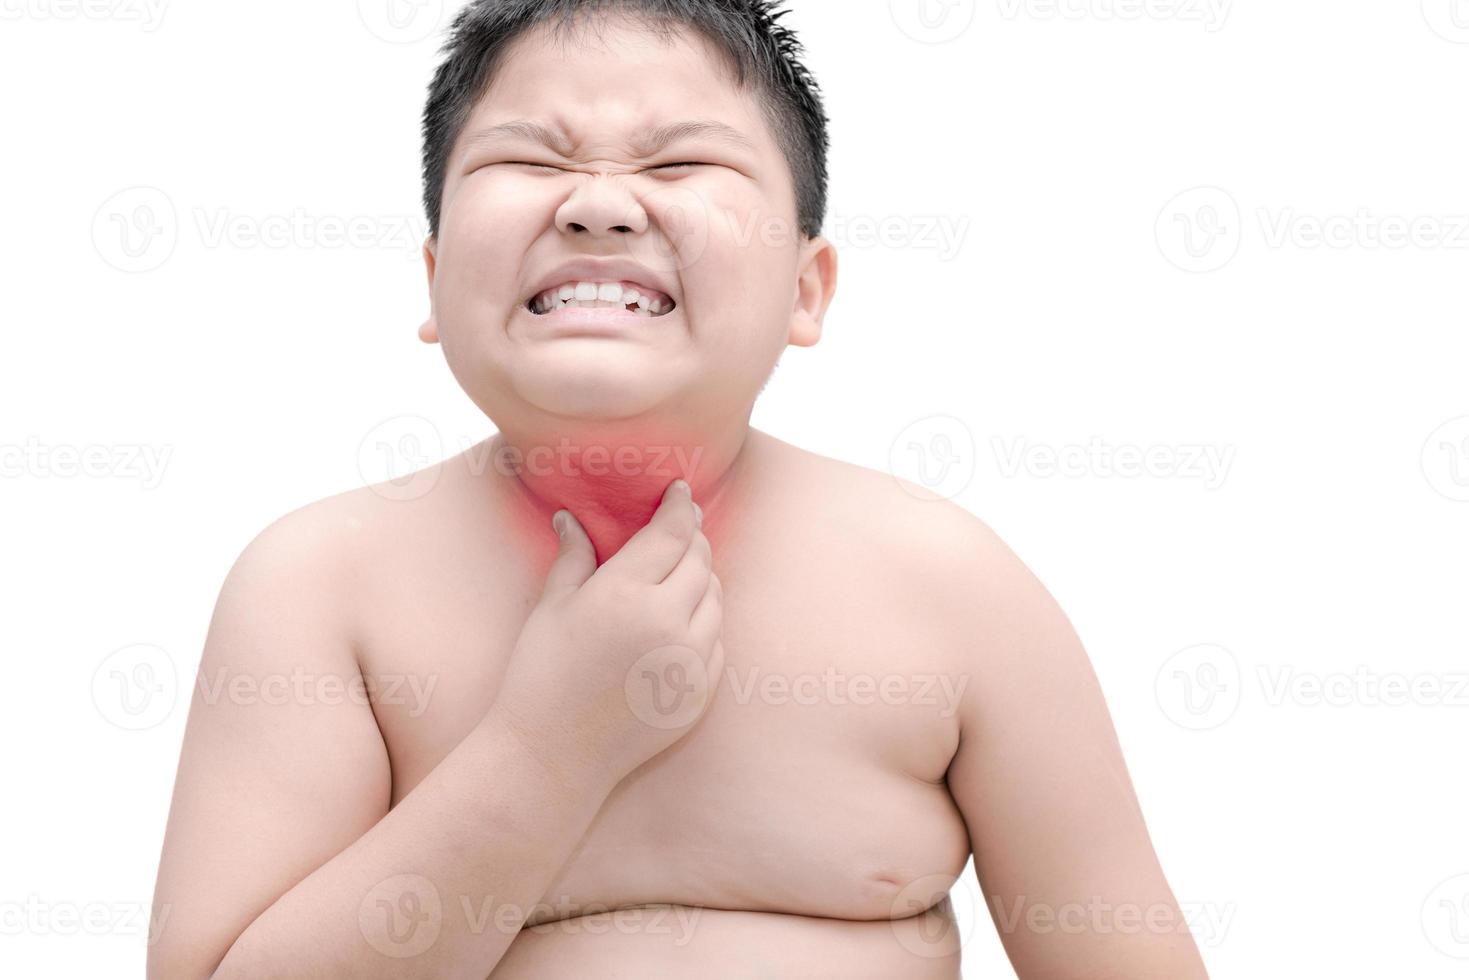 zwaarlijvig dik jongen krassen de jeuk met hand, keel irritatie, geïsoleerd foto